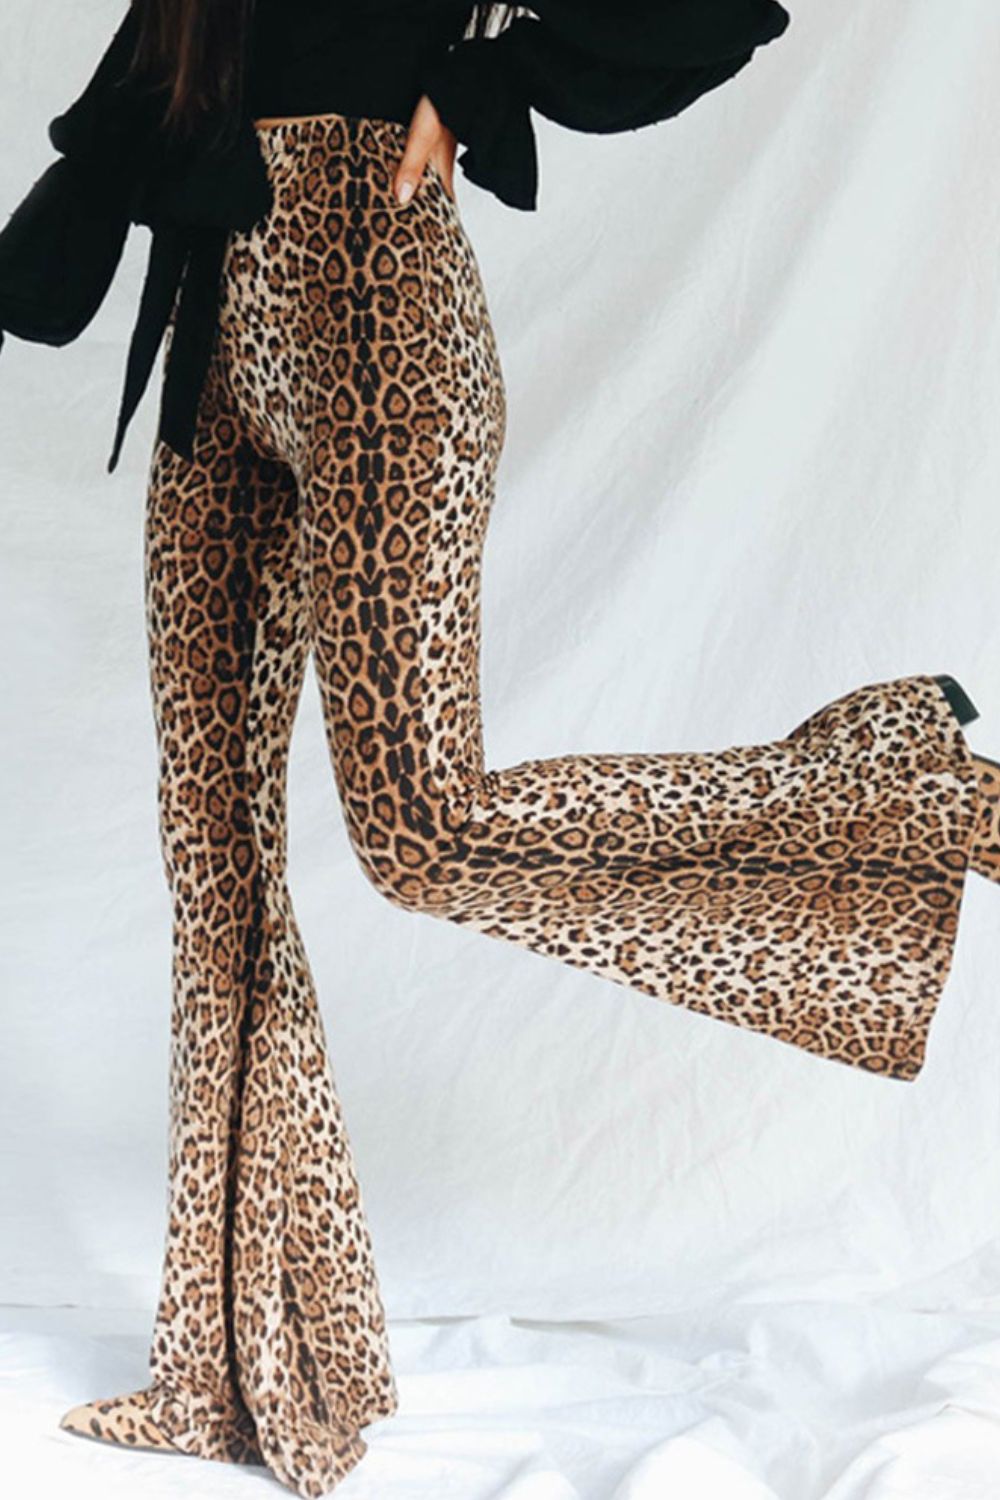 Leopard Print Flare Leg Pants - women's pants at TFC&H Co.